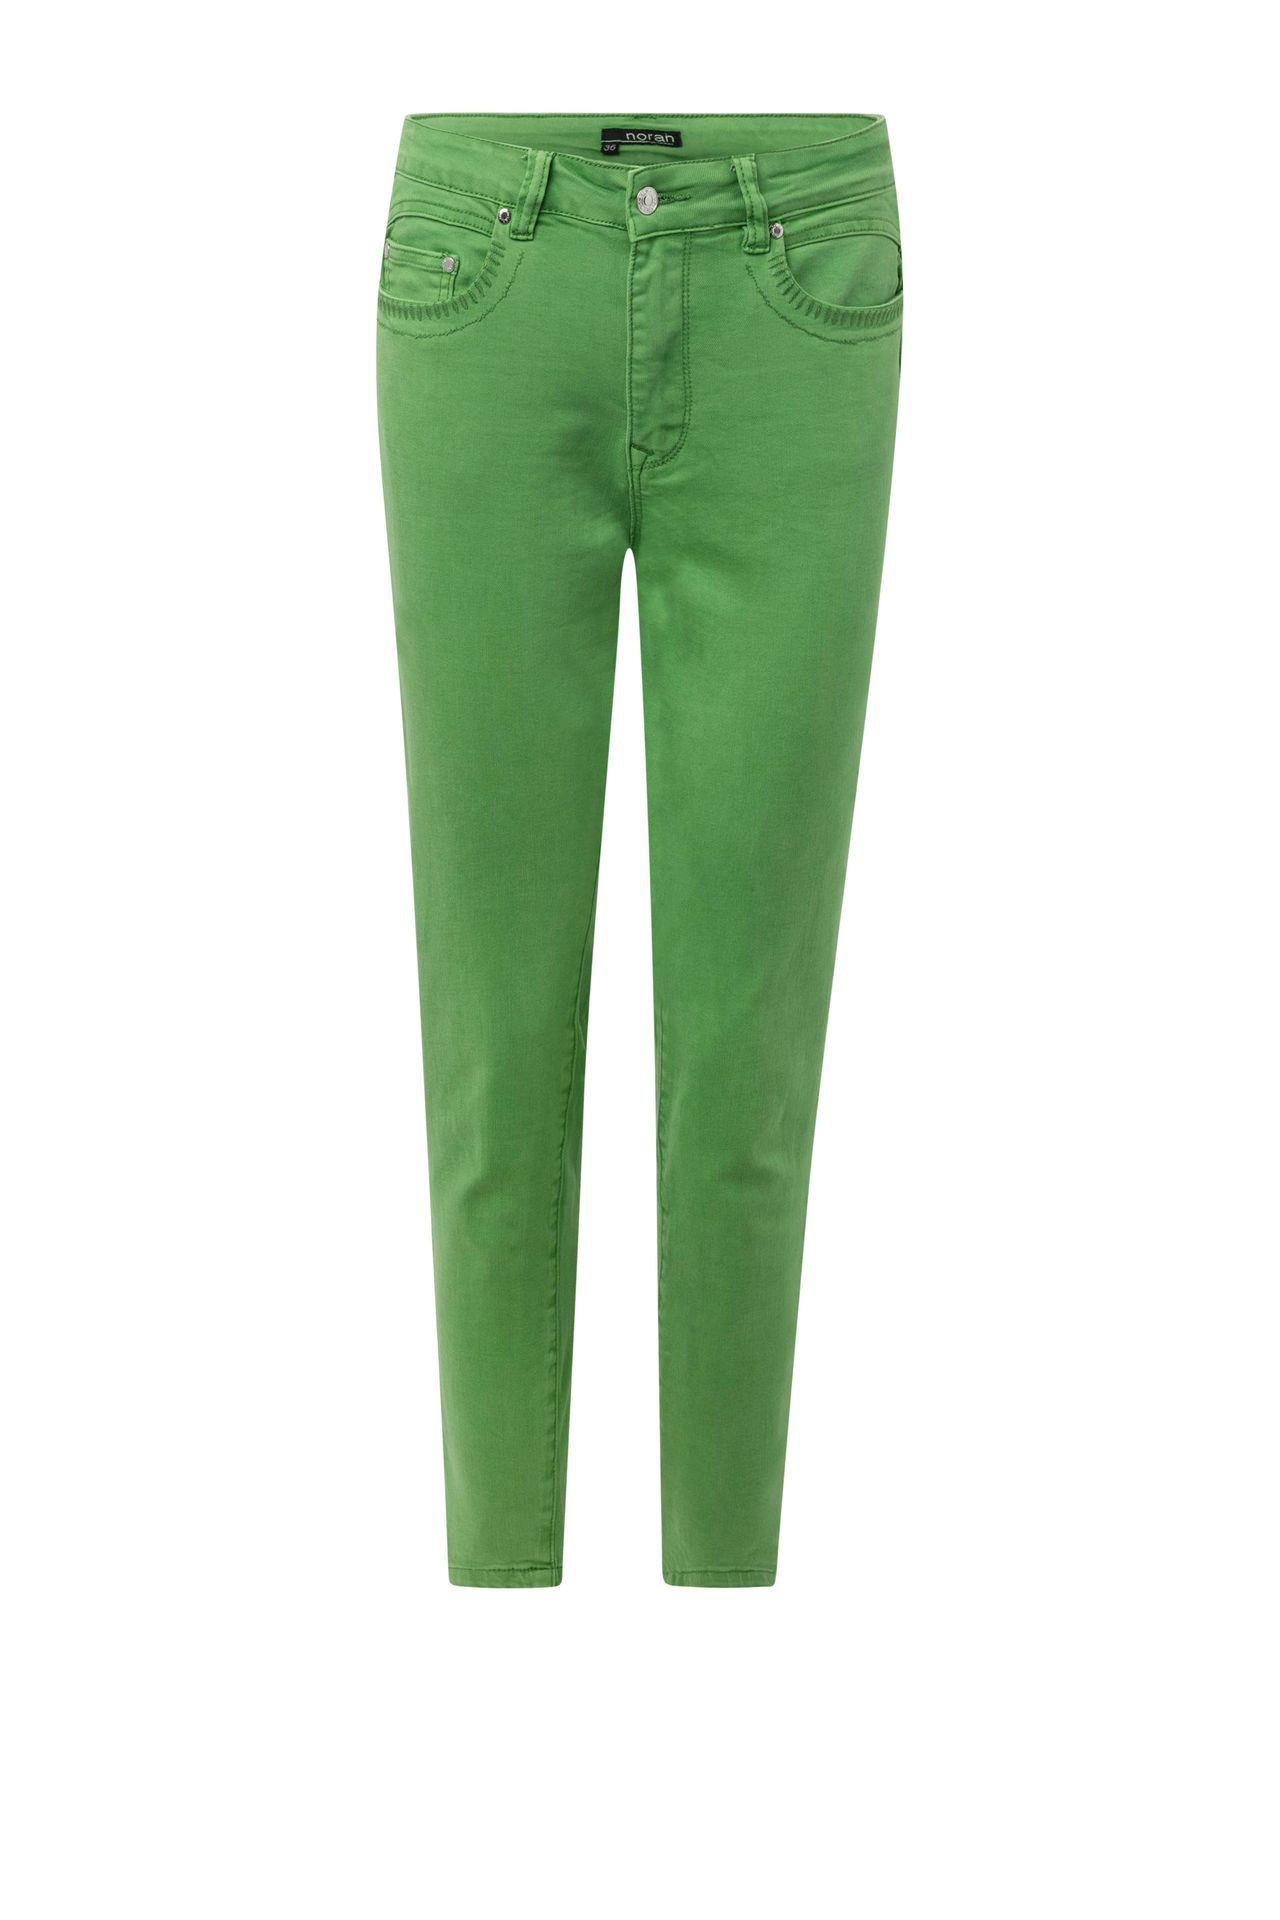  Groene denim jeans green 213891-500-42